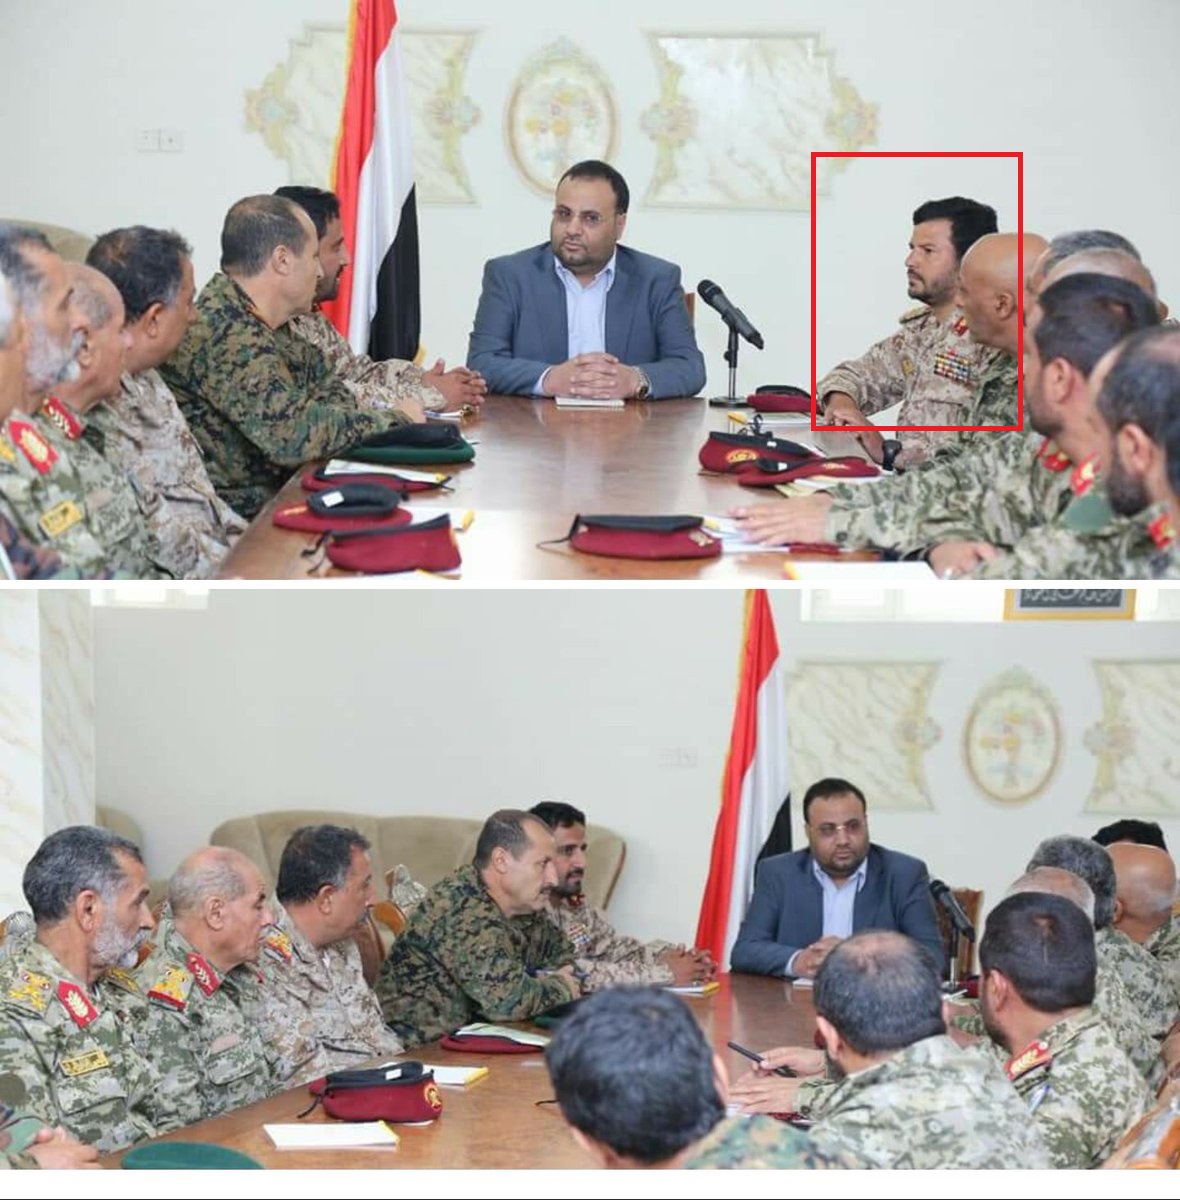 أول ظهور إعلامي لشقيق زعيم مليشيات الحوثي «عبدالخالق» بعد تعيينة قائد للحرس الجمهوري والقوات الخاصة